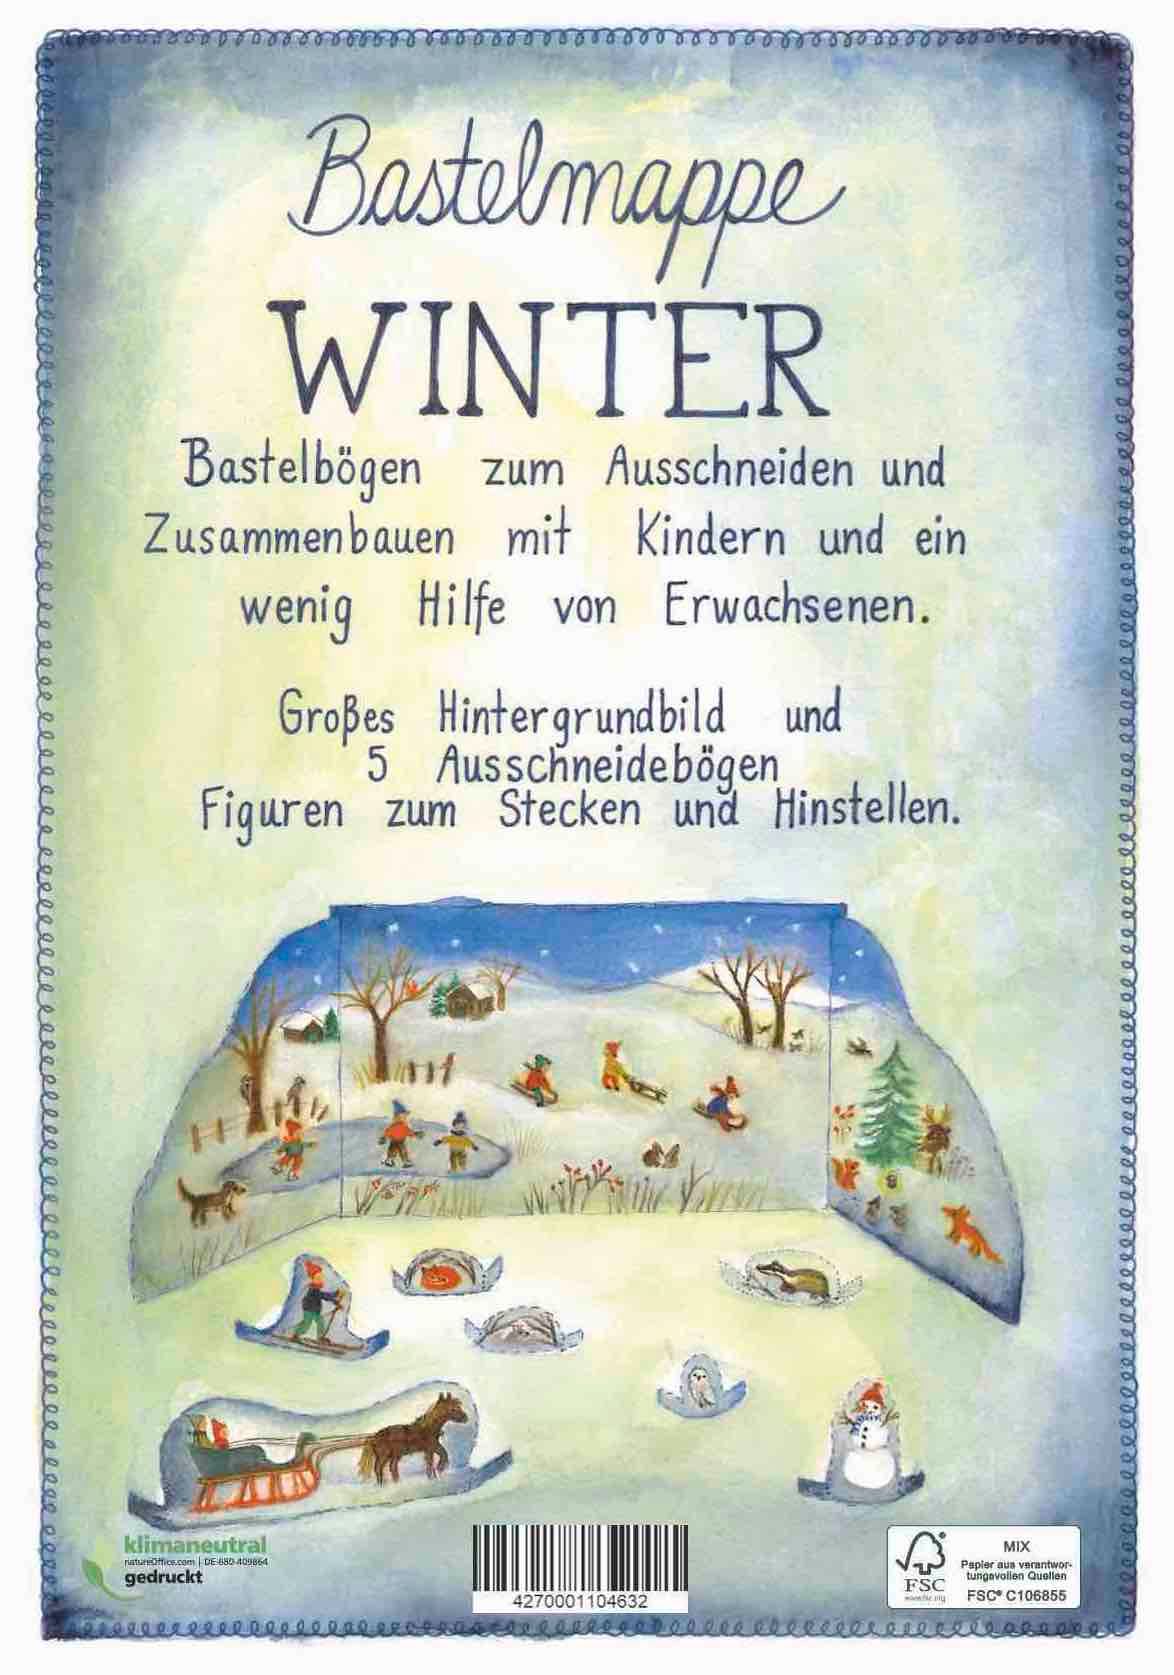 Bastelmappe "Winter" von OdeDesjardins